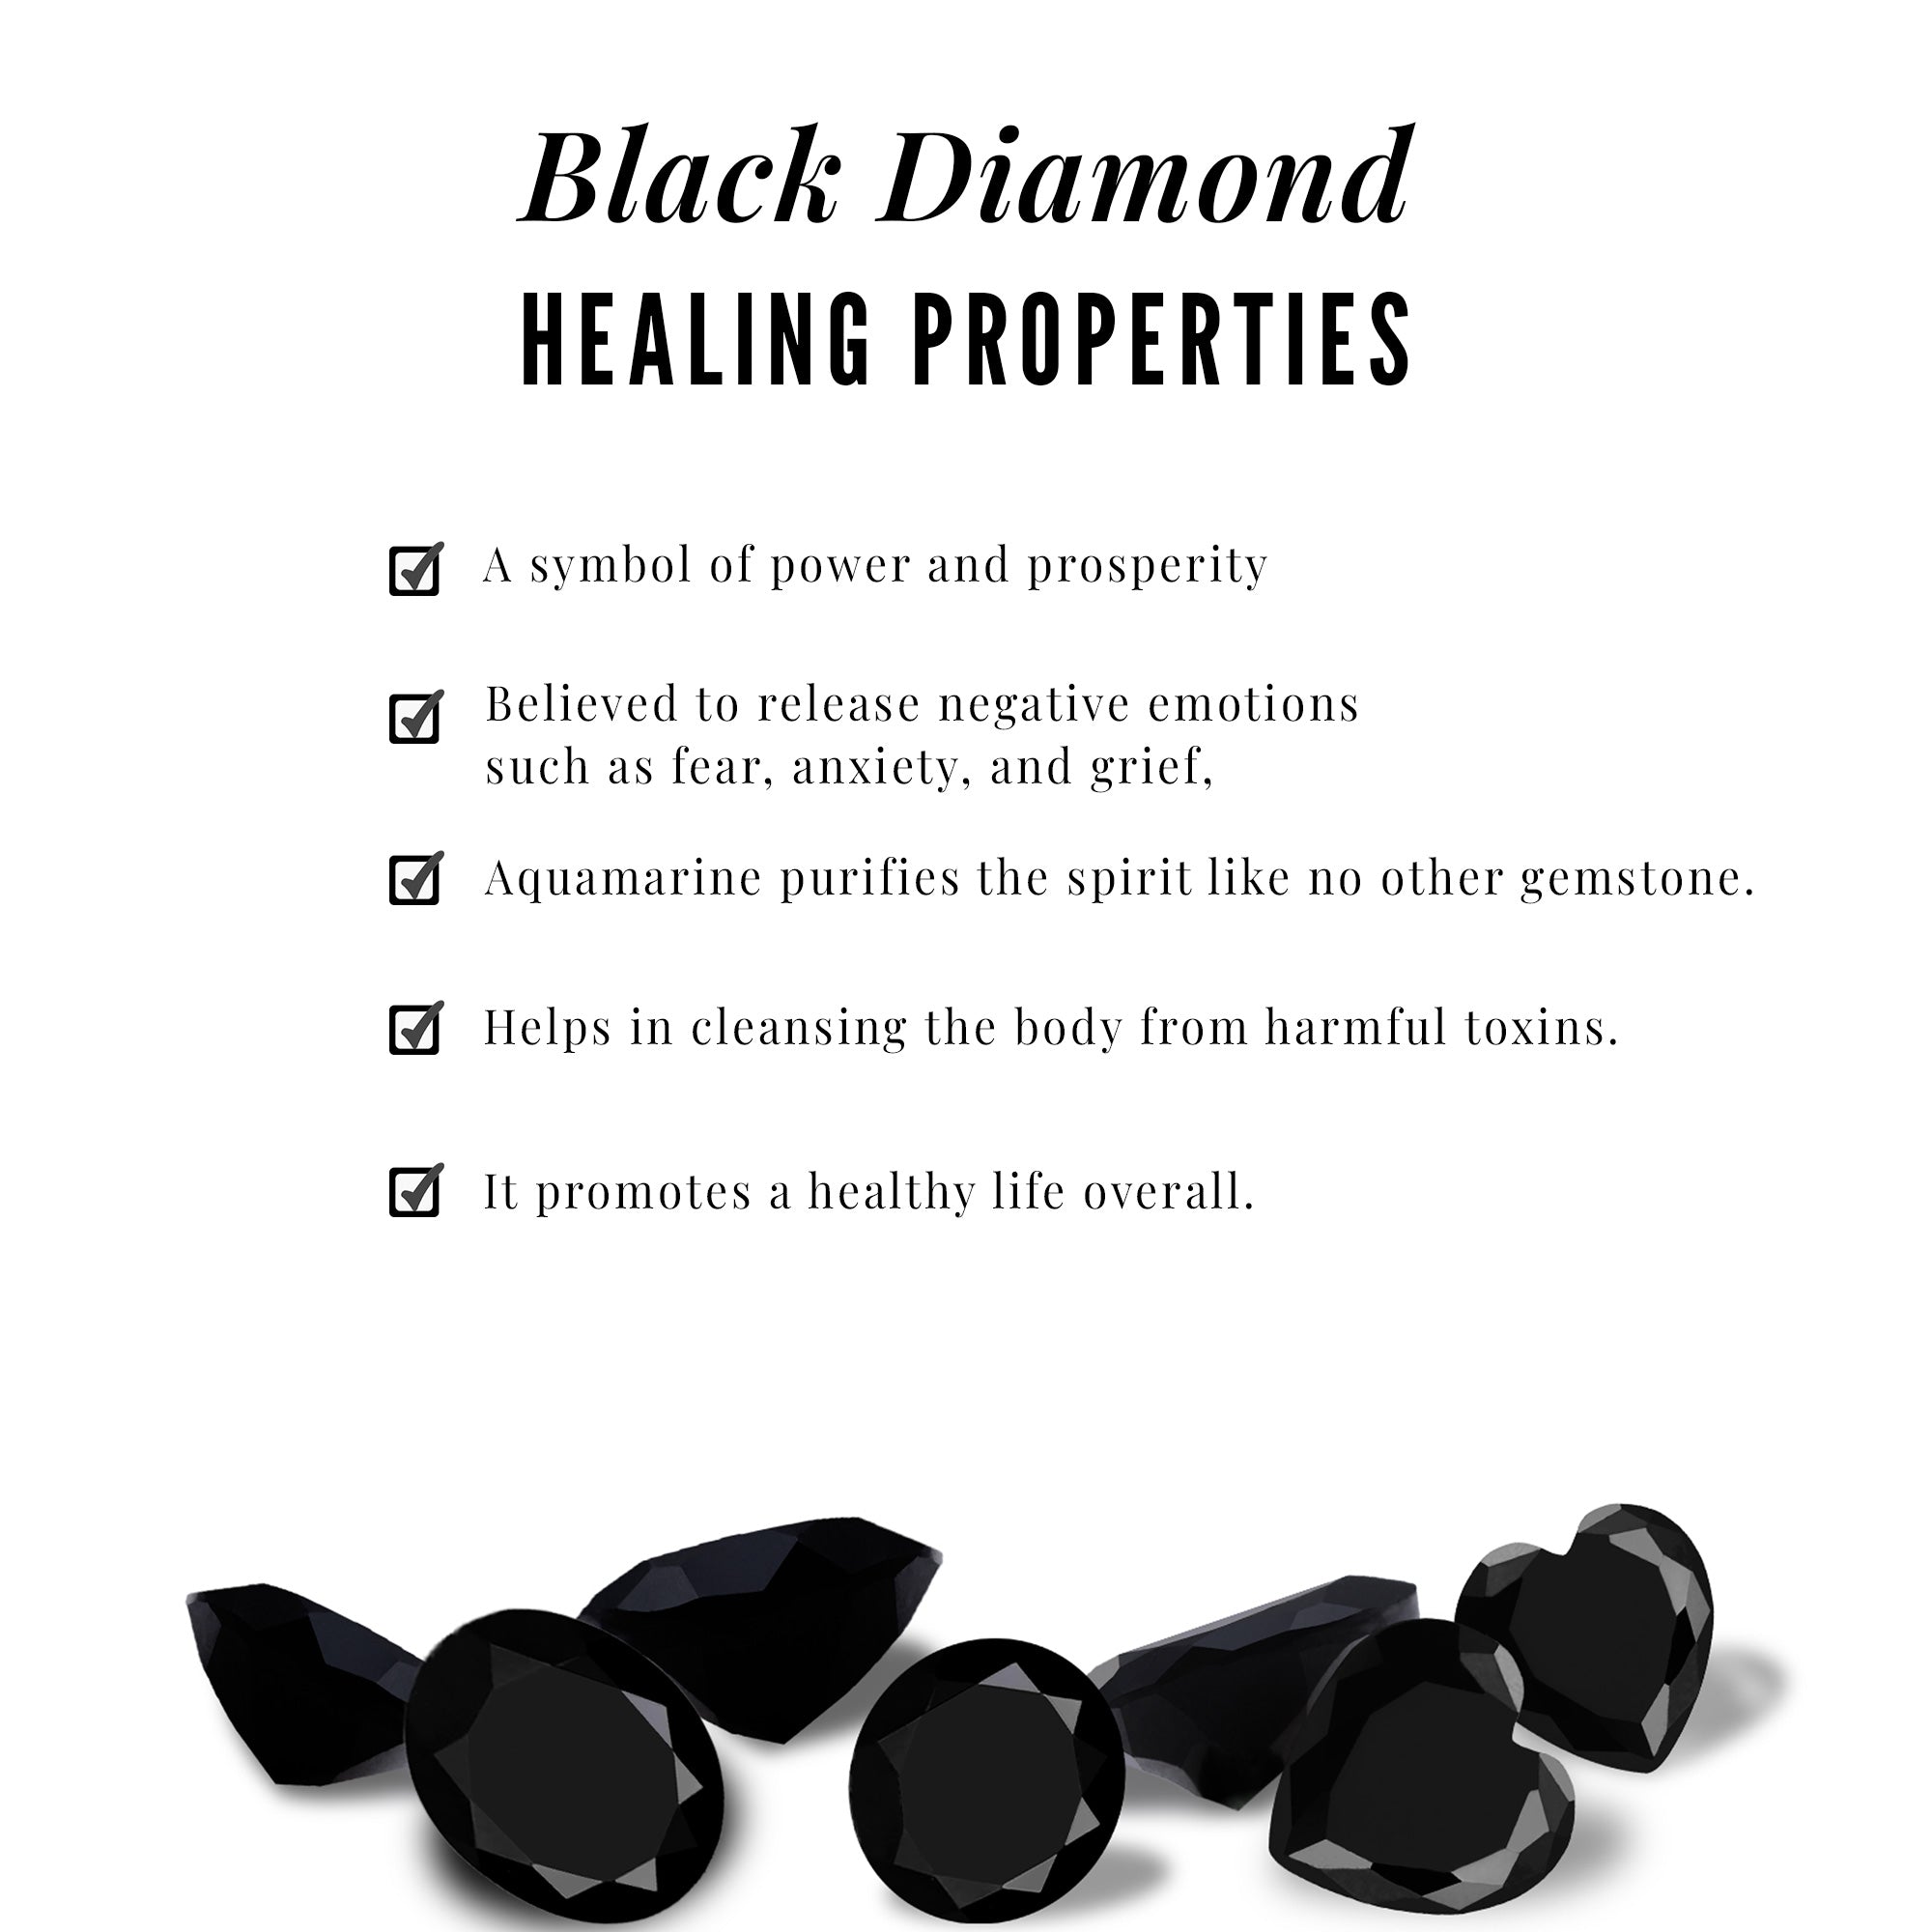 Minimal Oval Black Diamond Pendant with Moissanite Stones Black Diamond - ( AAA ) - Quality - Rosec Jewels